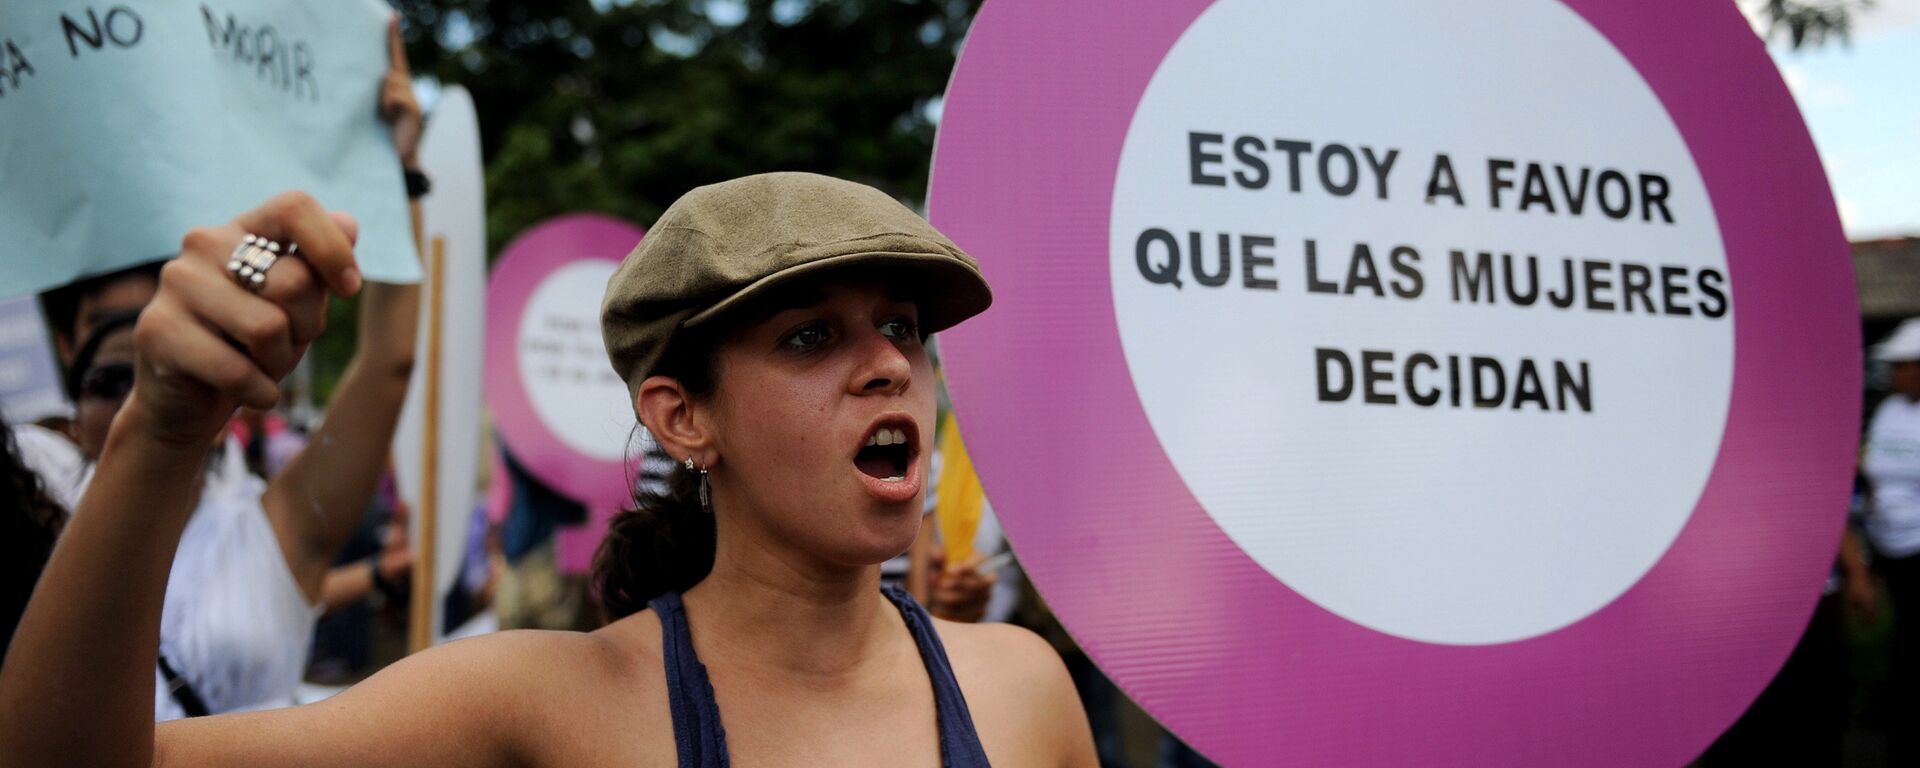 Activistas de Nicaragua participan en la protesta a favor del aborto, Managua - Sputnik Mundo, 1920, 28.10.2021